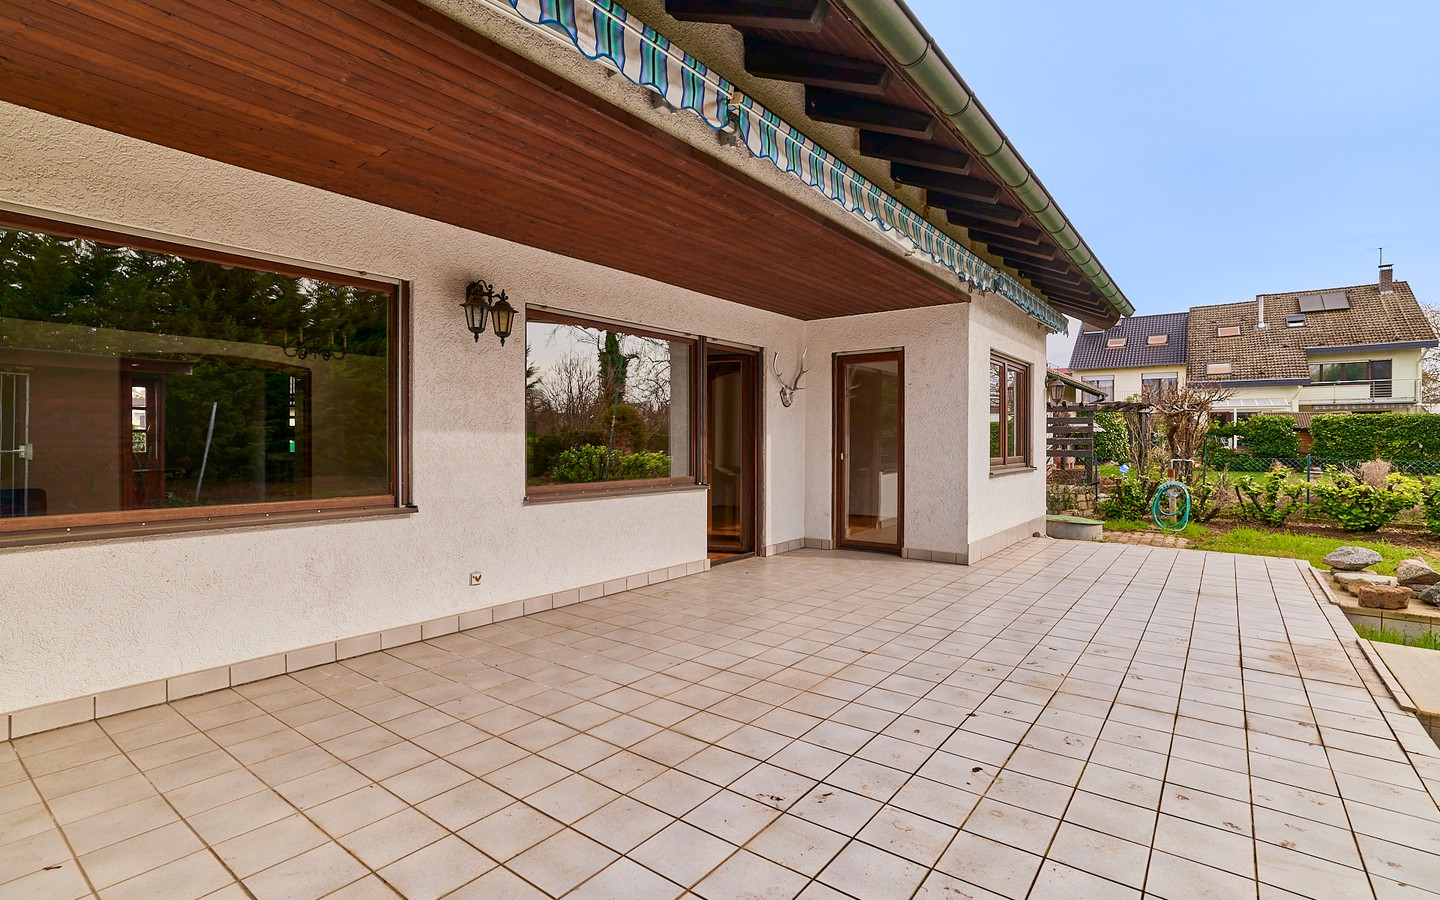 Terrasse - Freistehendes Einfamilienhaus mit Garten und Garage in ruhiger Feldrandlage in Neckarhausen